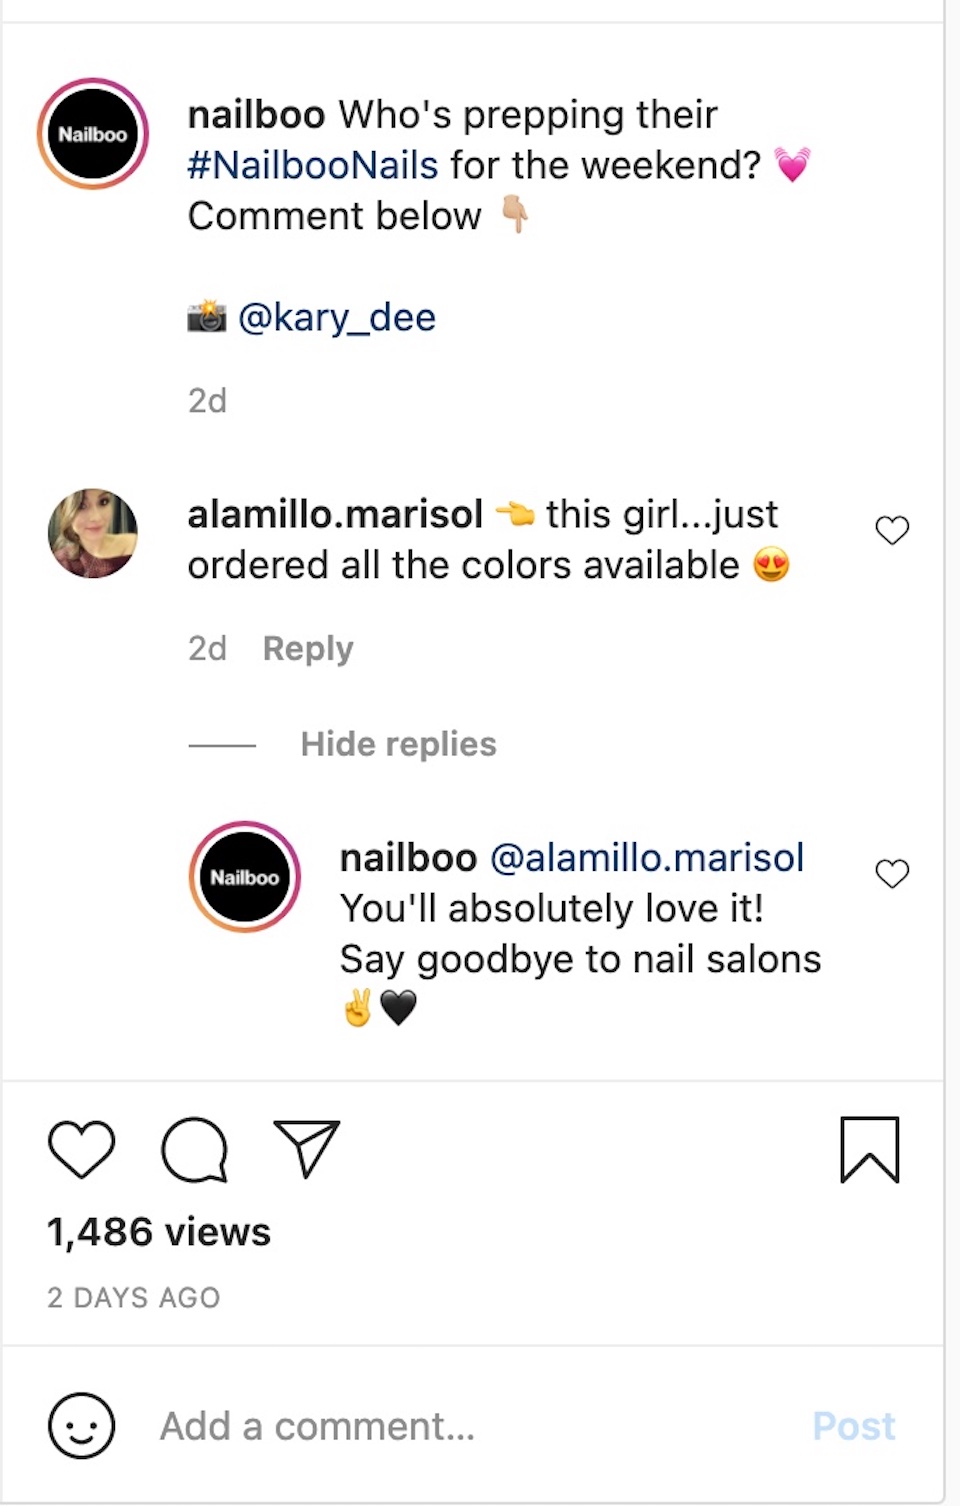 บริษัทผลิตภัณฑ์เล็บ Nailboo กำลังโต้ตอบกับผู้แสดงความคิดเห็นในโพสต์บนบัญชี Instagram ของตน